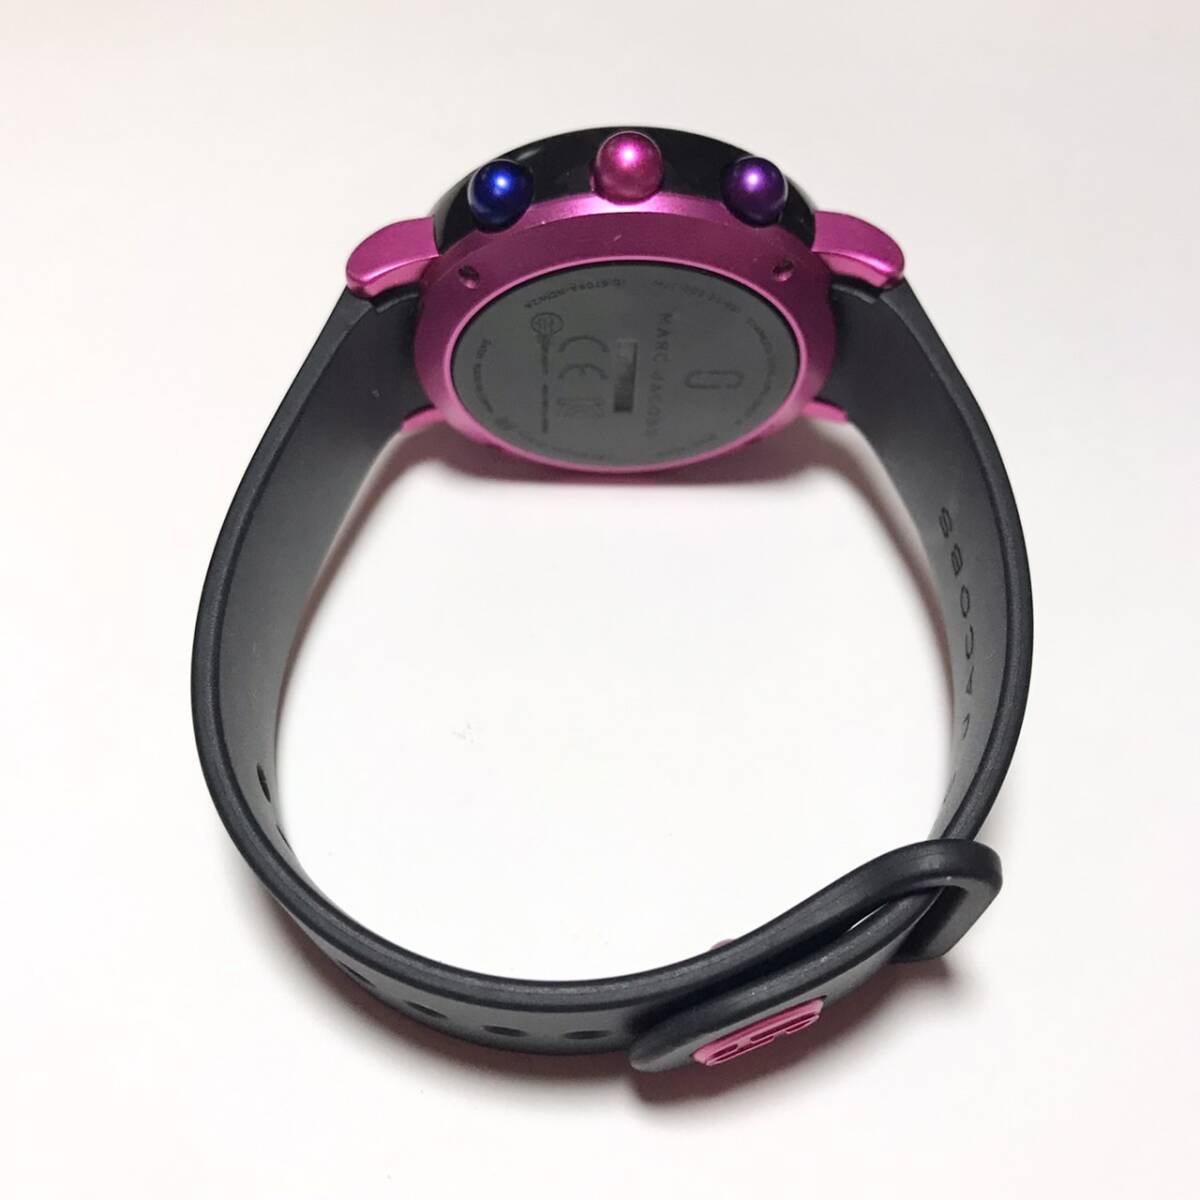 [1 иен ] часы MARC JACOBS Mark Jacobs HYBRID hybrid NDW2T смарт-часы чёрный / розовый серия наручные часы часы утиль обращение 